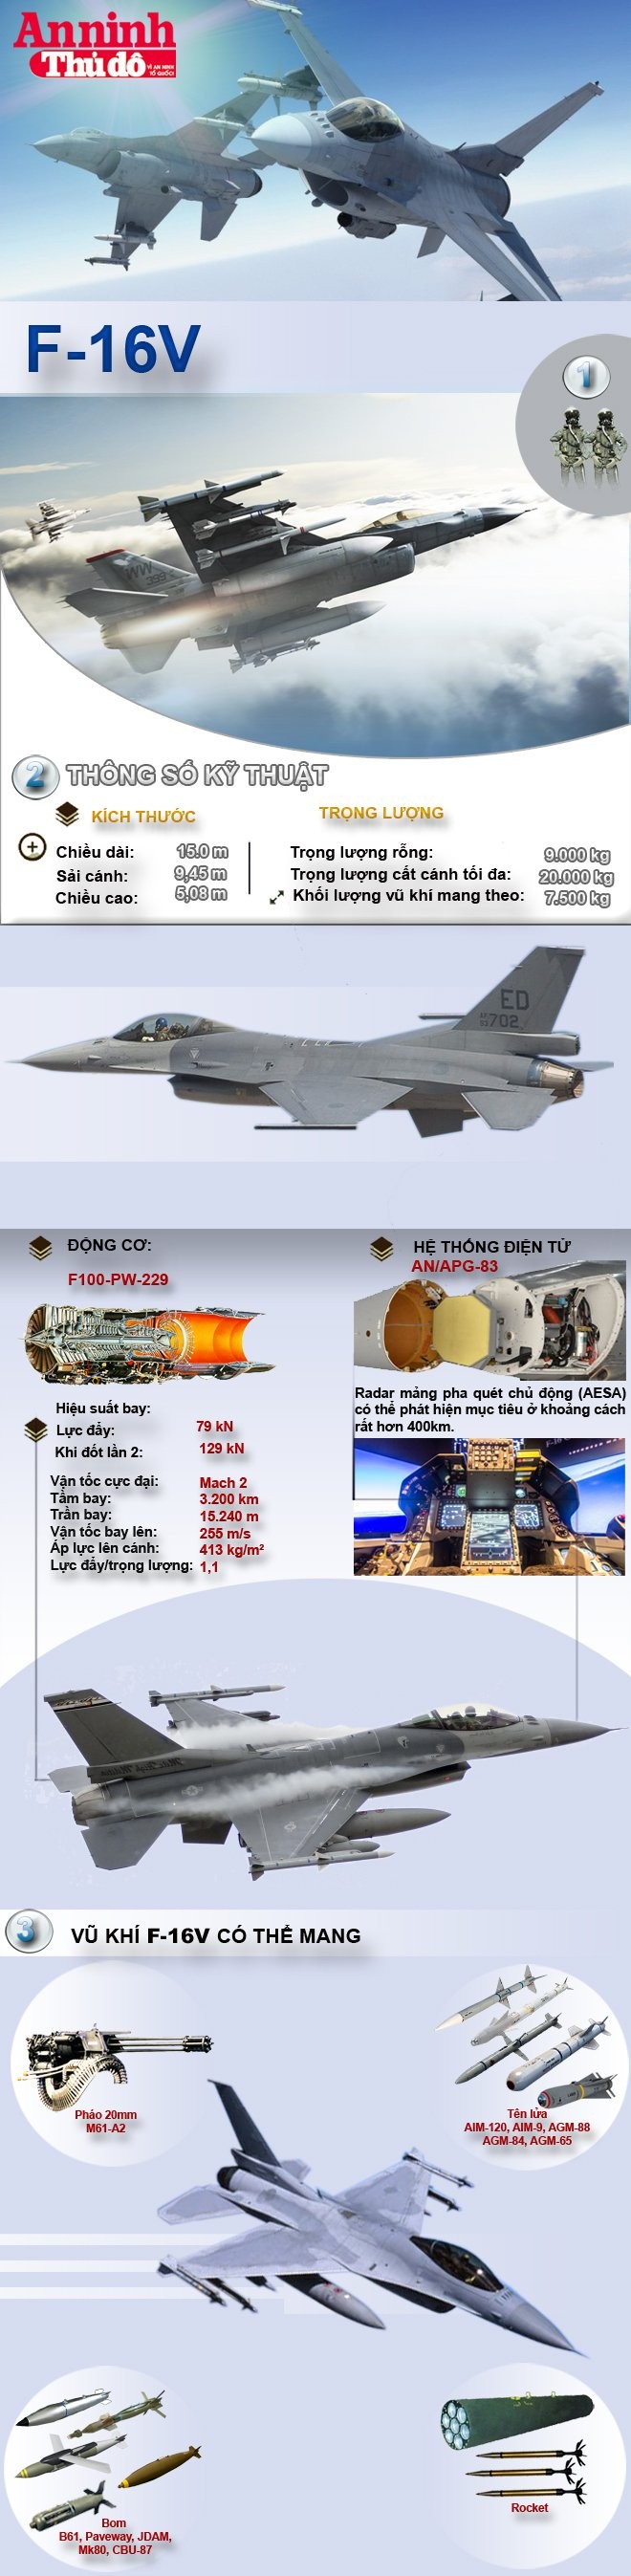 [Infographic] F-16V, phiên bản kinh hoàng nhất trong gia đình F-16 ảnh 2